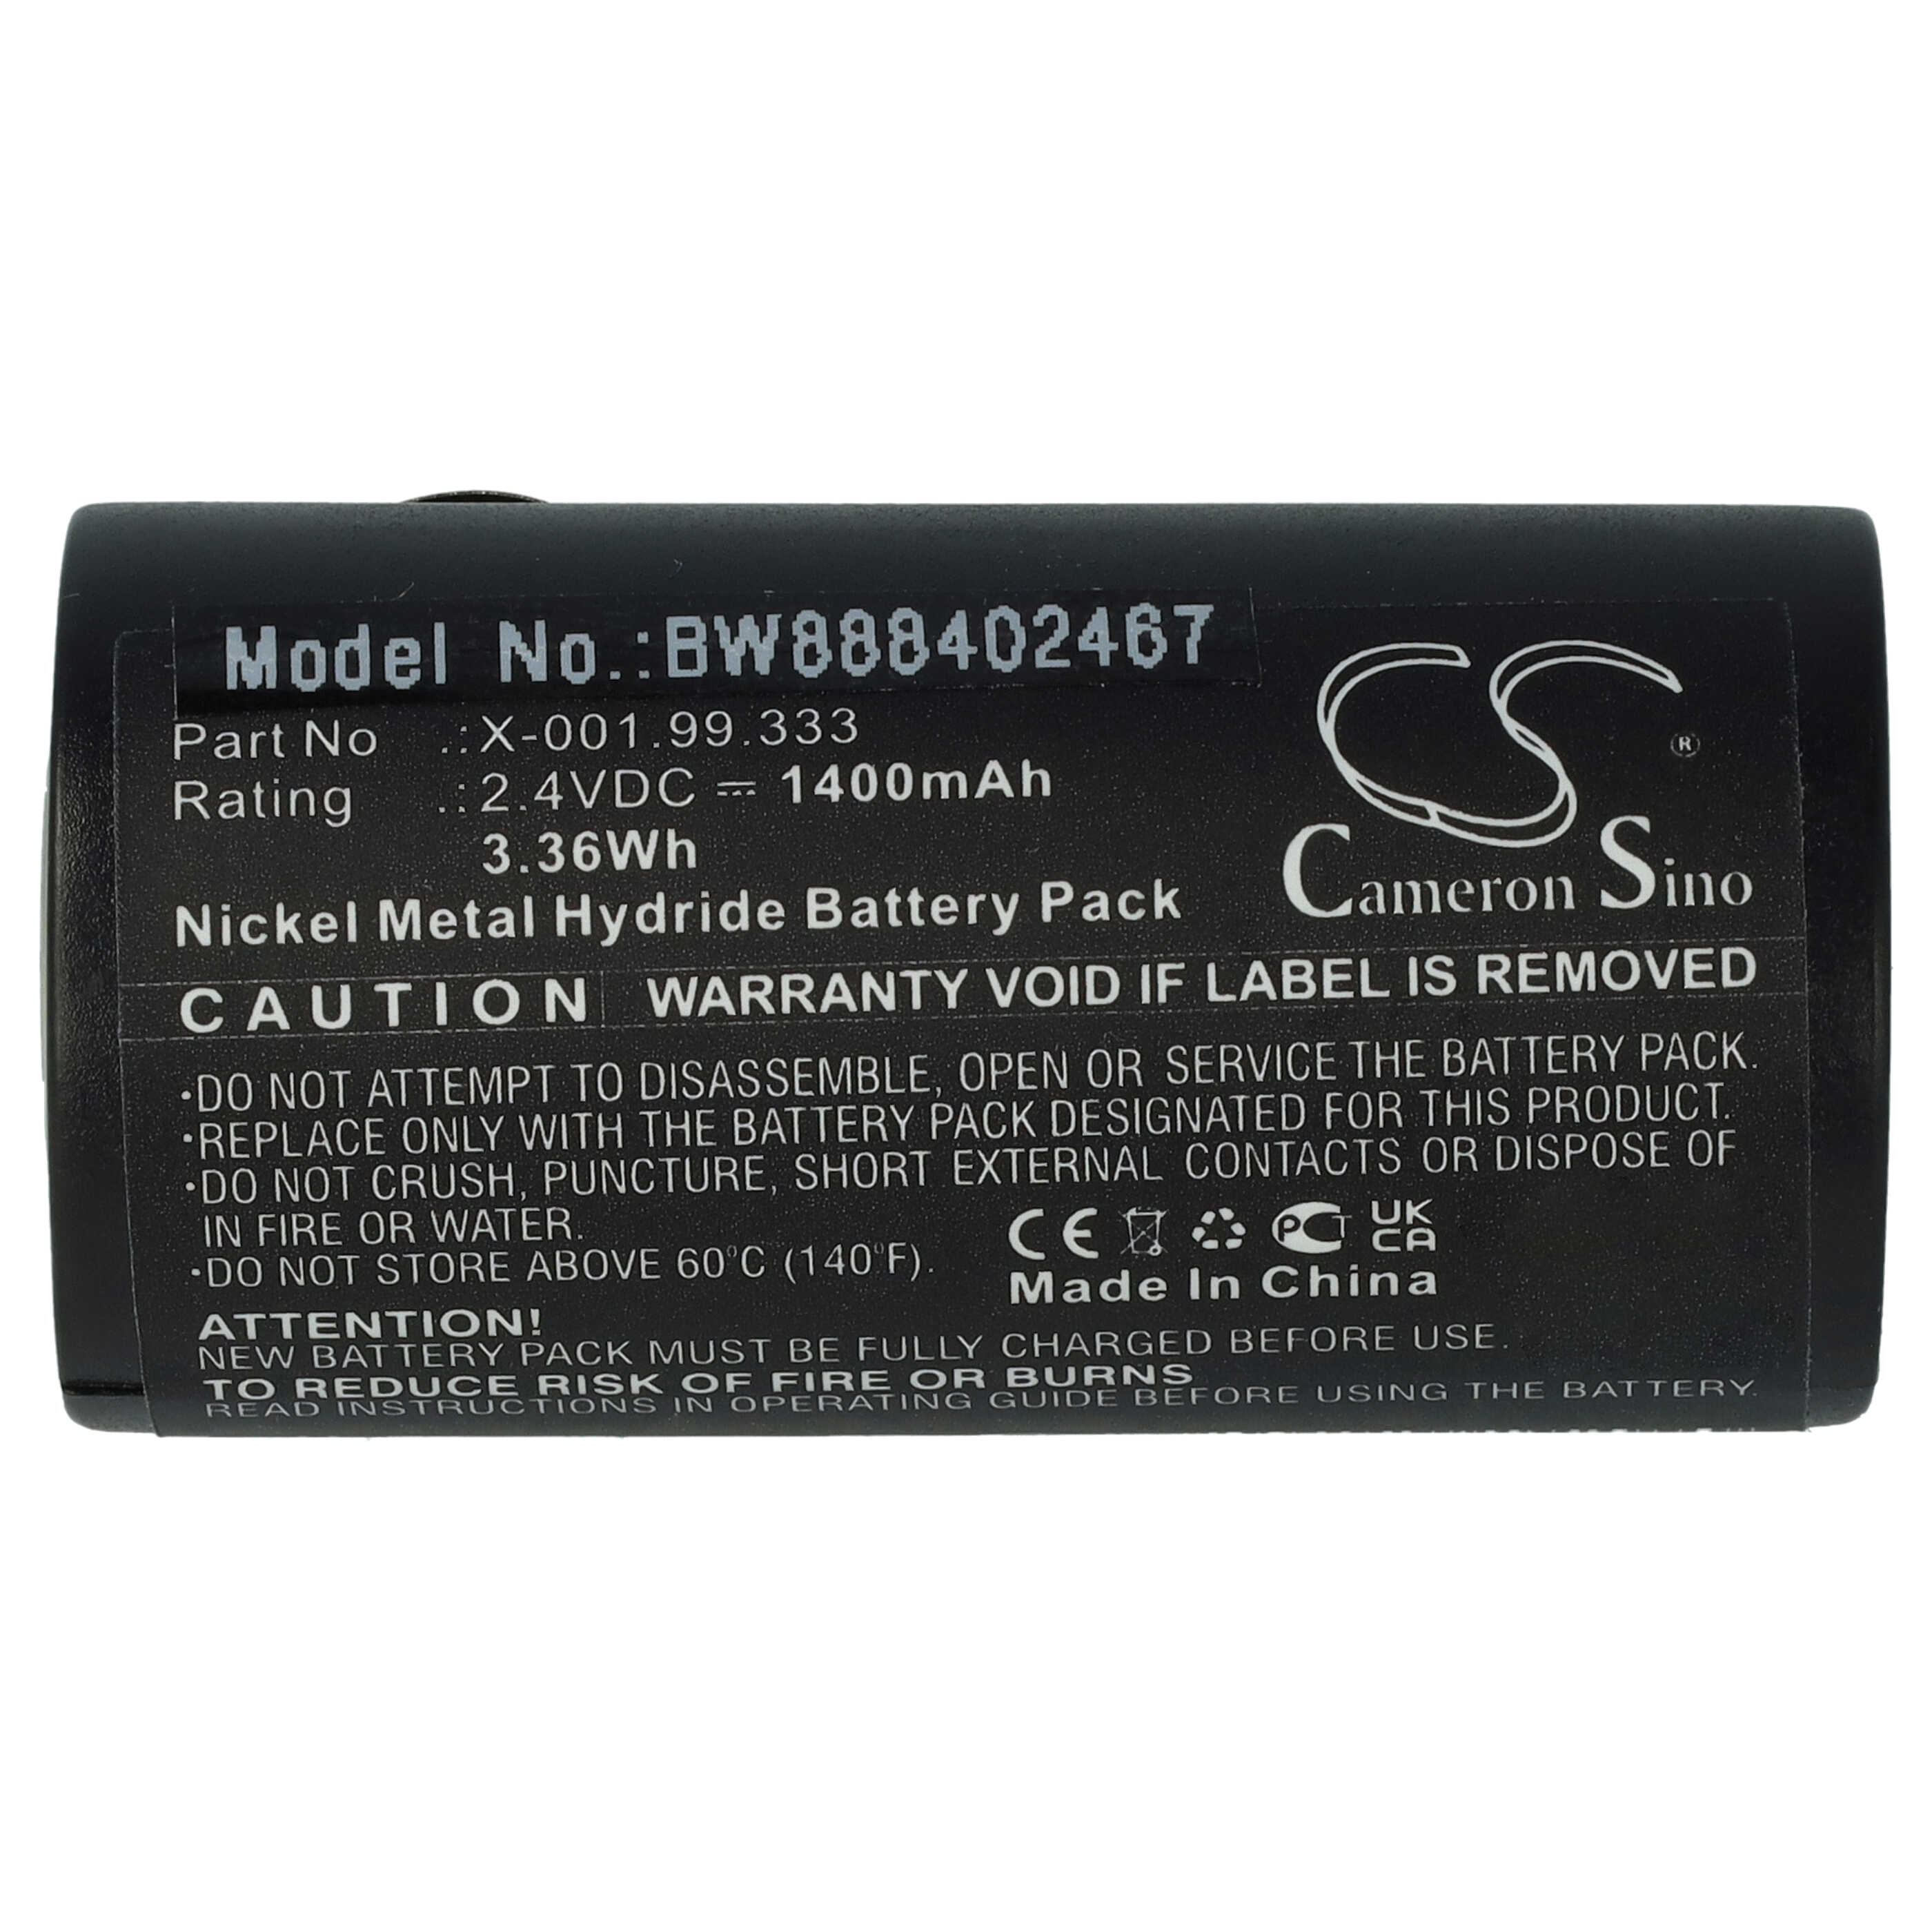 Batterie remplace Heine X-001.99.333 pour appareil médical - 1400mAh 2,4V NiMH